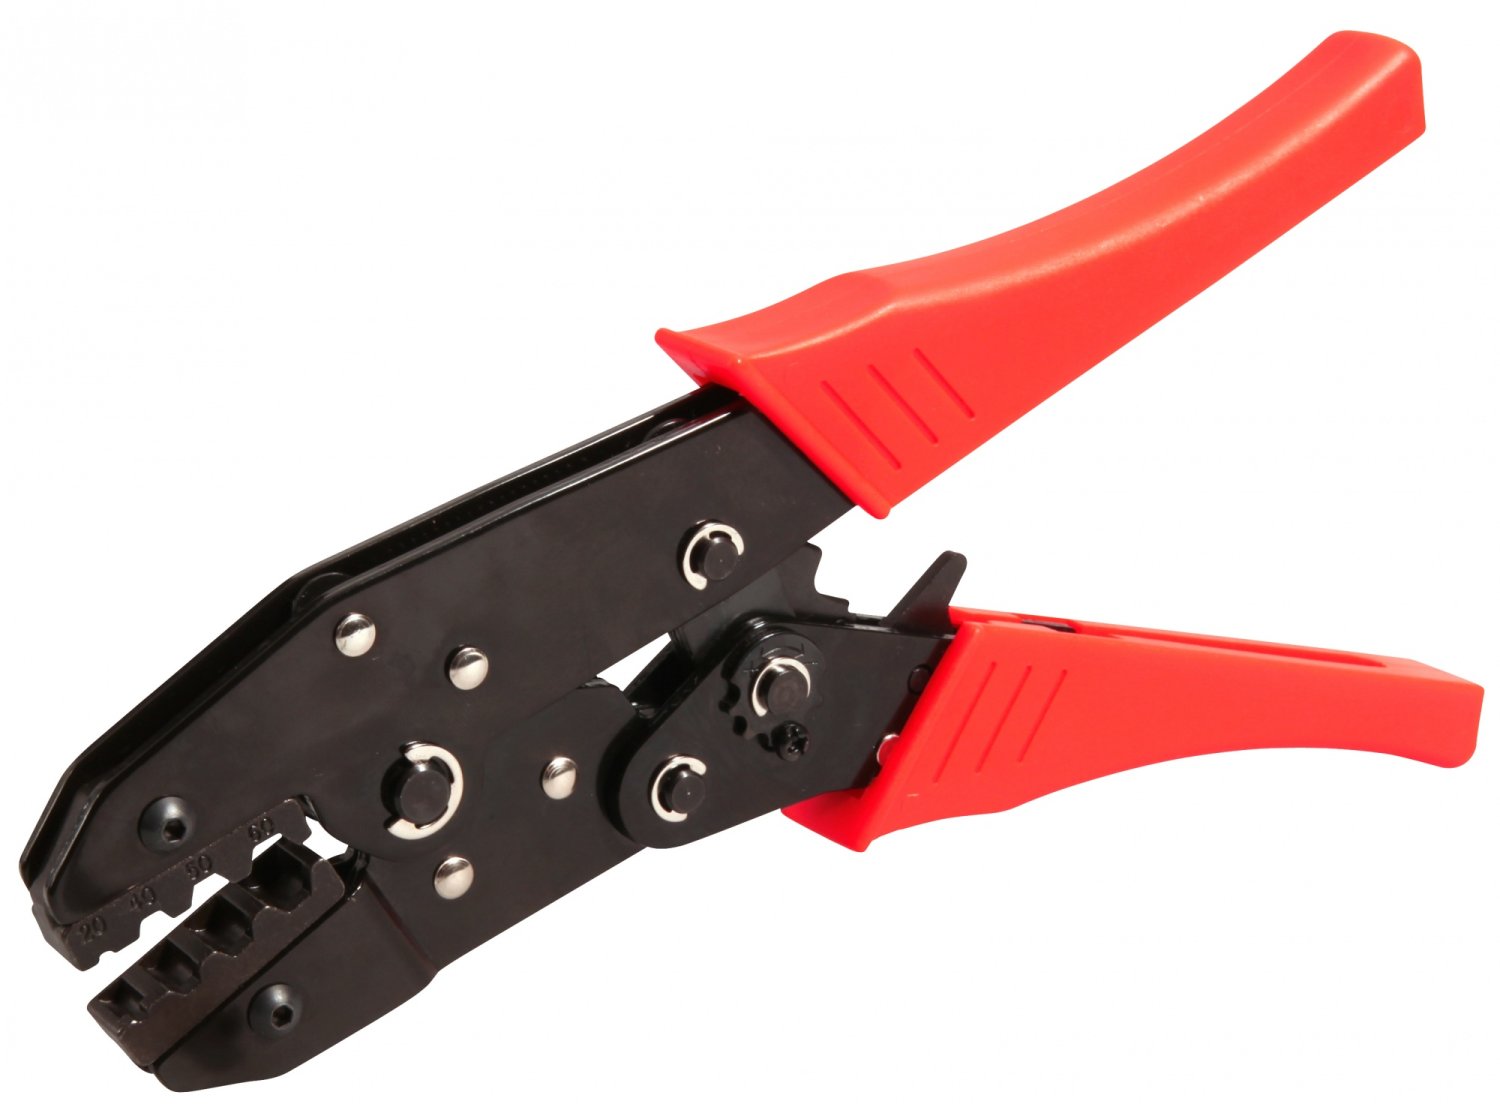 Инструмент многофункциональный ELVEDES для обжимания и троса и рубашки, красный/черный, 2009019 винт крепления троса campagnolo rd re312 r7350634